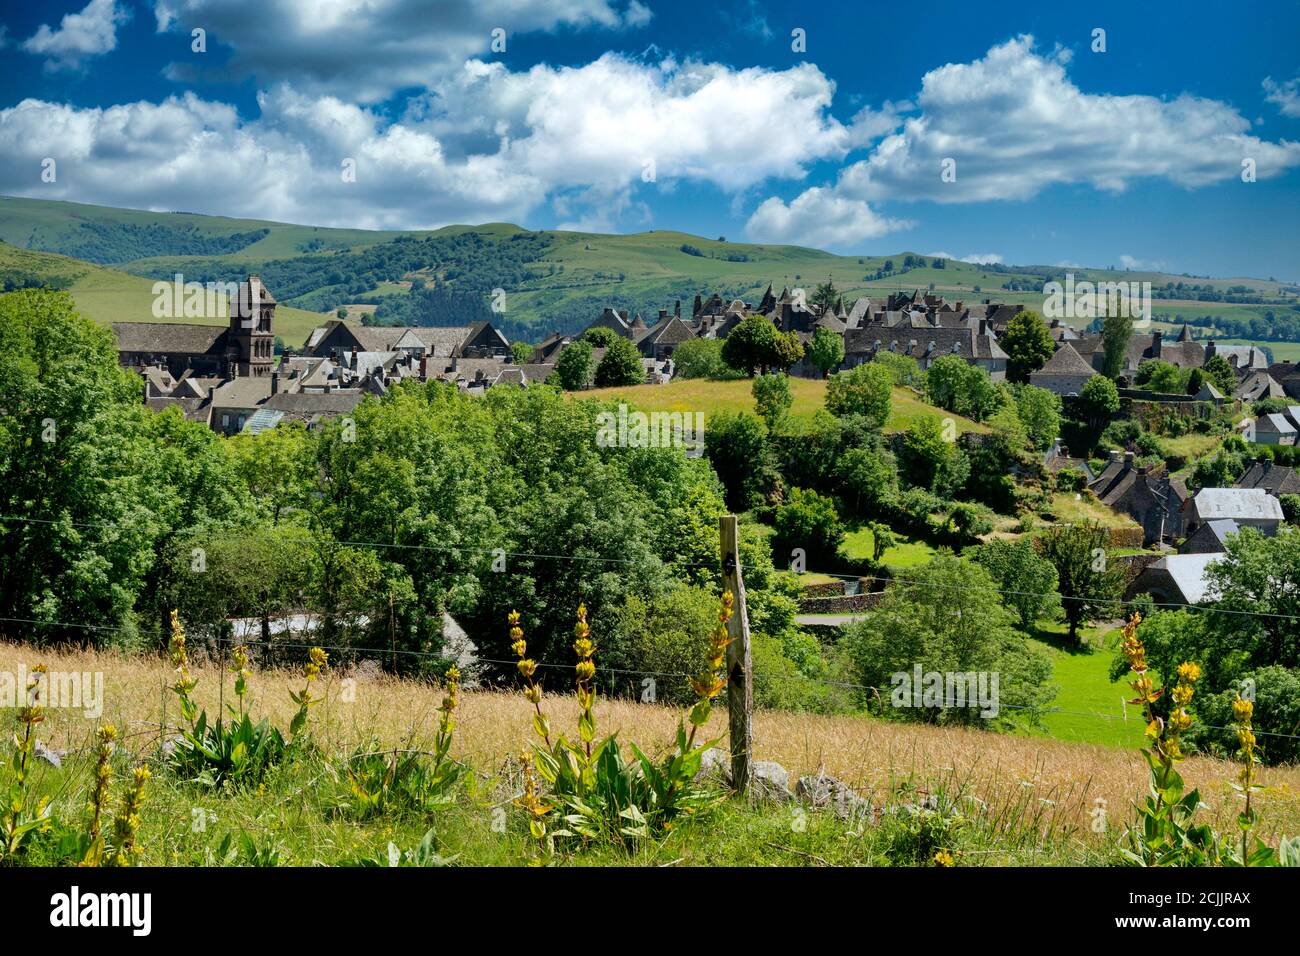 Salers labellisés les plus beaux villages de France, vue sur la cité médiévale, département du Cantal, Auvergne Rhône Alpes, France Banque D'Images